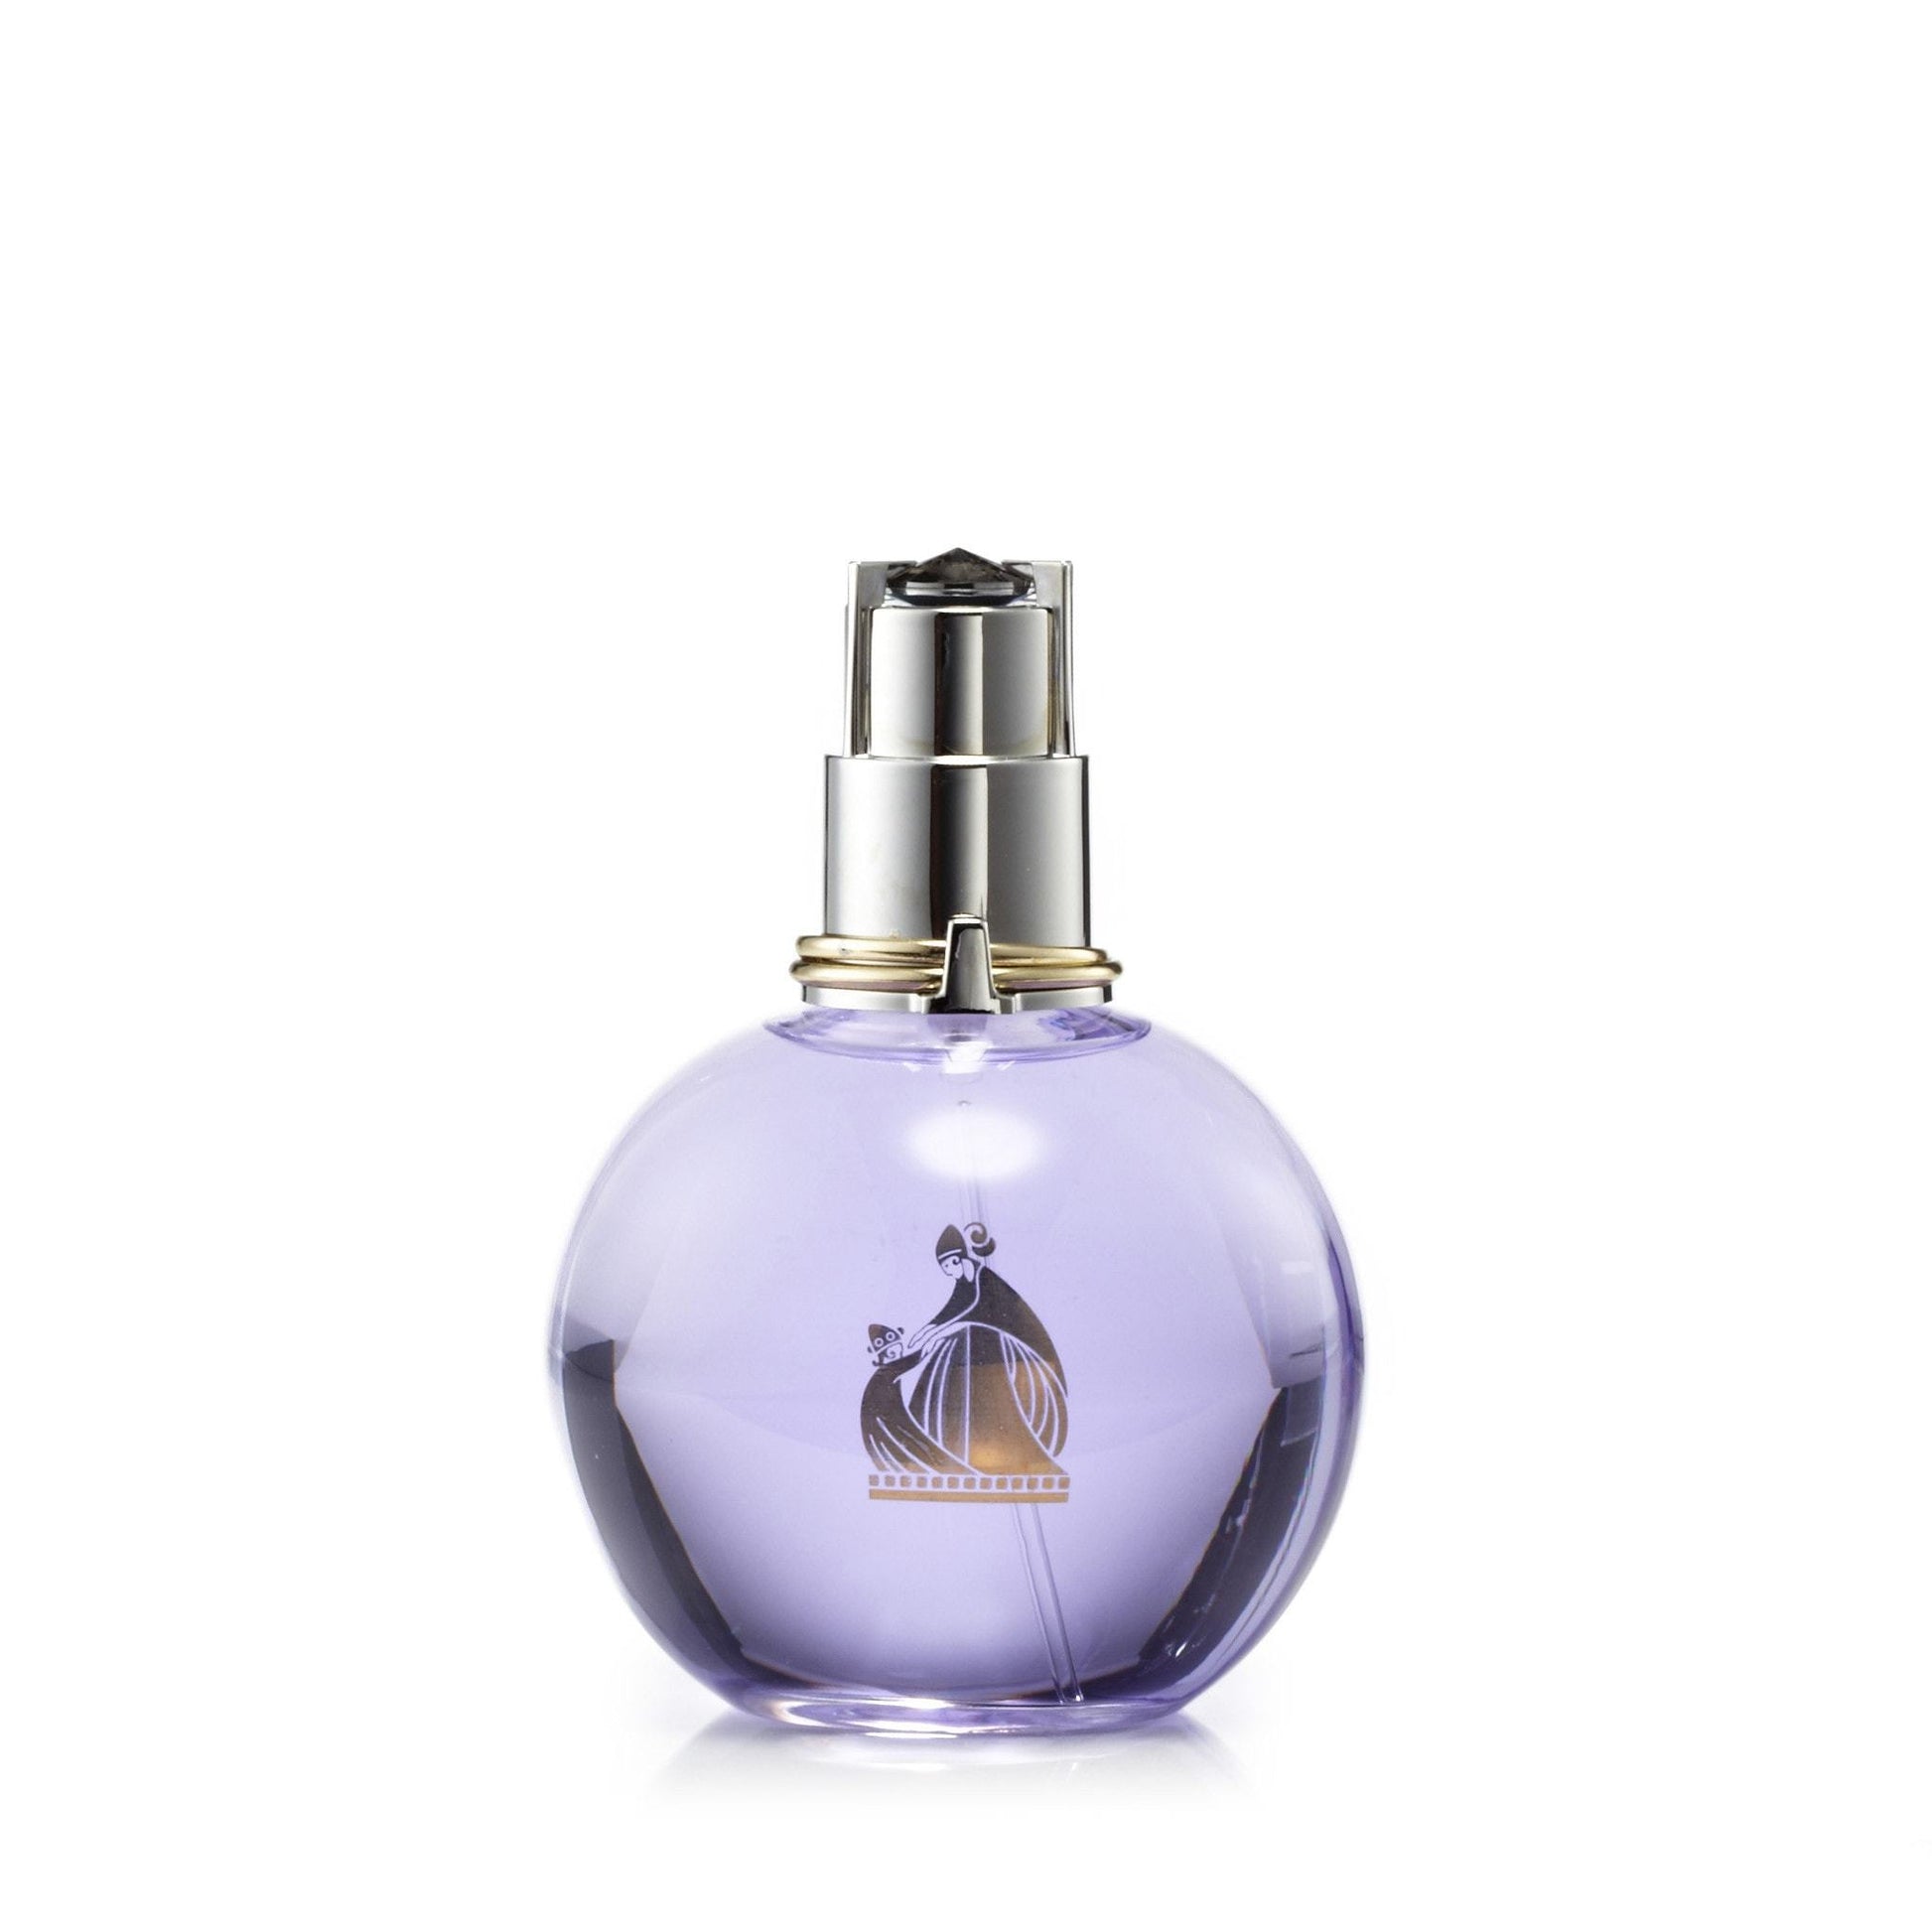 Eclat D'Arpege Eau de Parfum Spray for Women by Lanvin, Product image 2